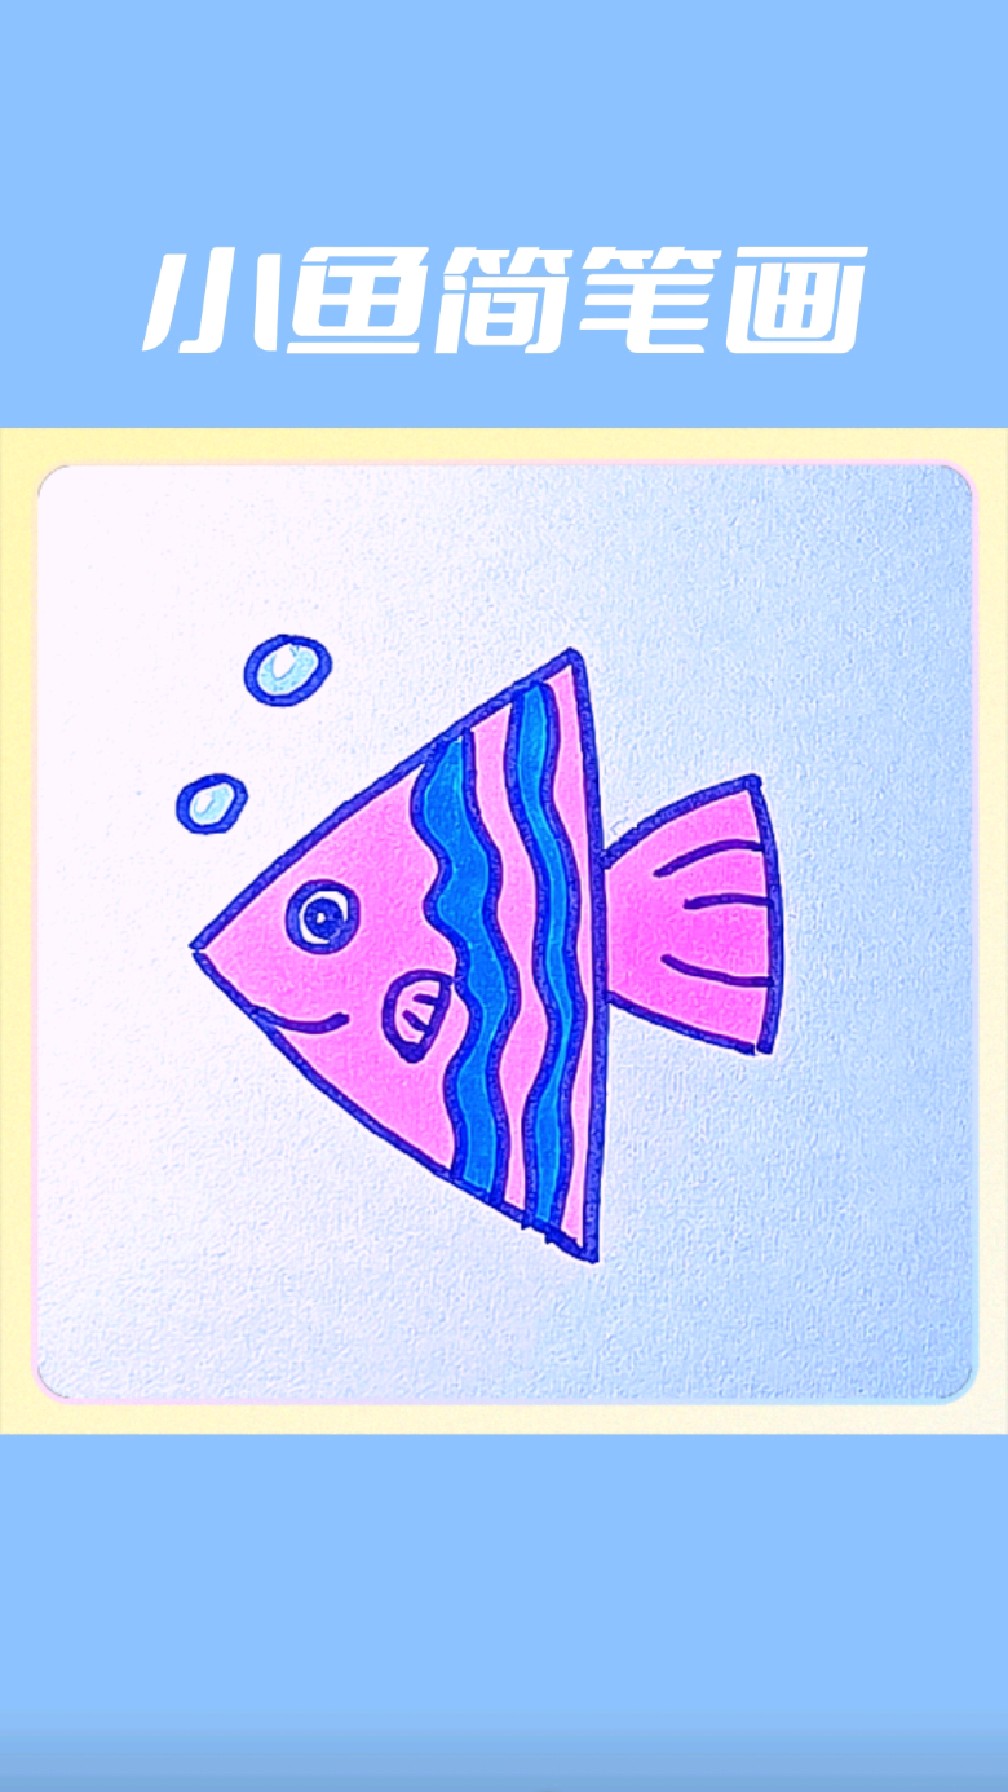 三角形小鱼简笔画图片